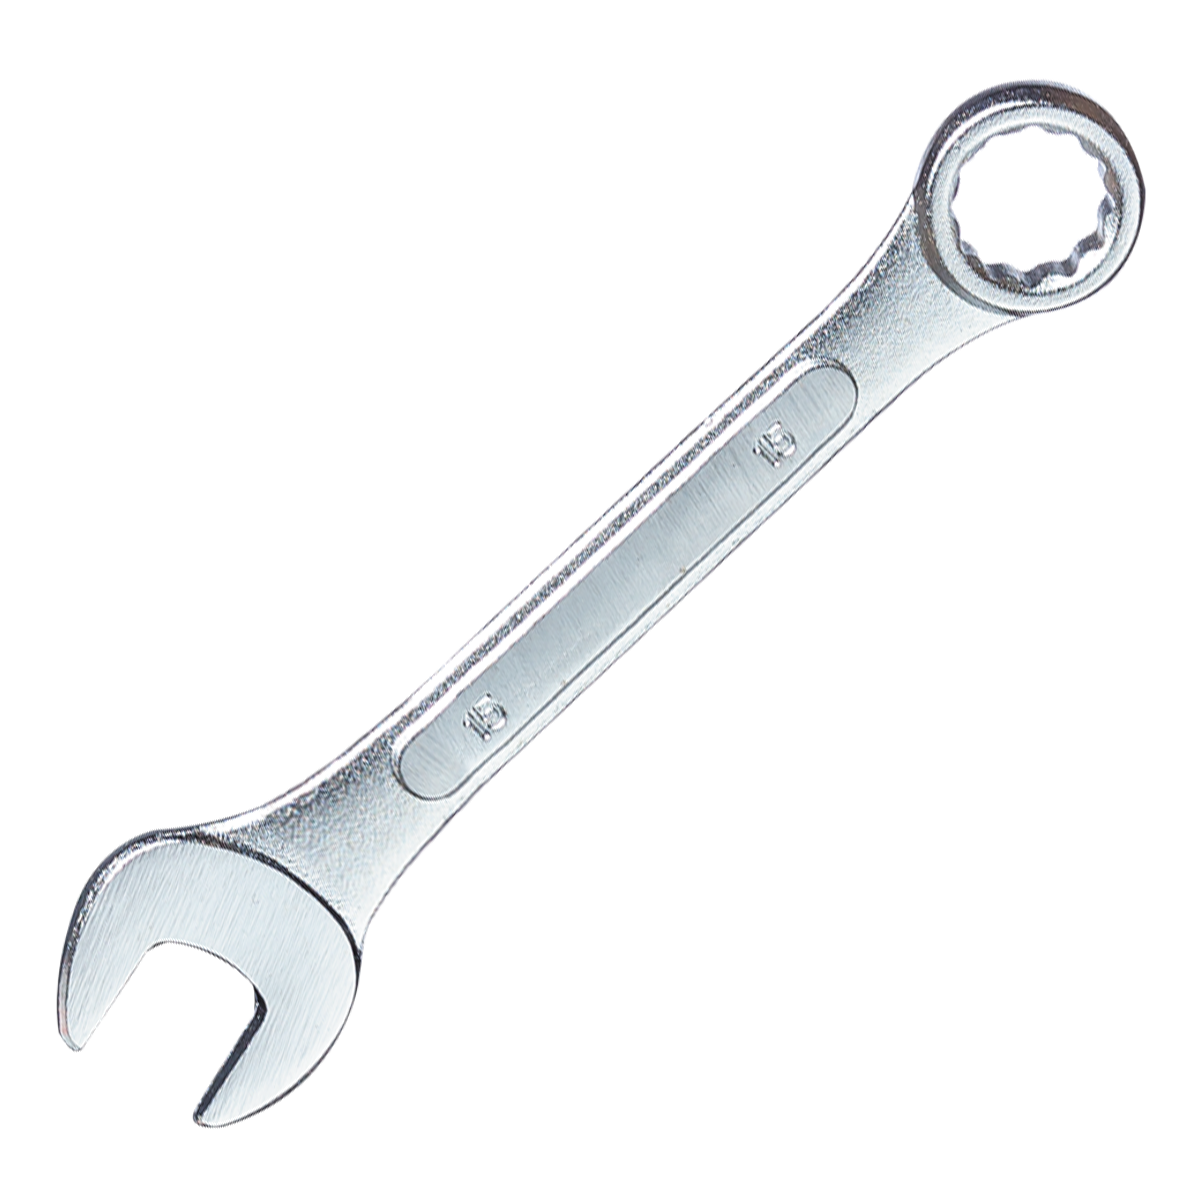 Ключ гаечный комбинированный, 7 мм ZIPOWER COMBINATION SPANNER 7 mm жидкий ключ масляный для отвинчивания приржавевших деталей avs avk 112 335 мл жидкость